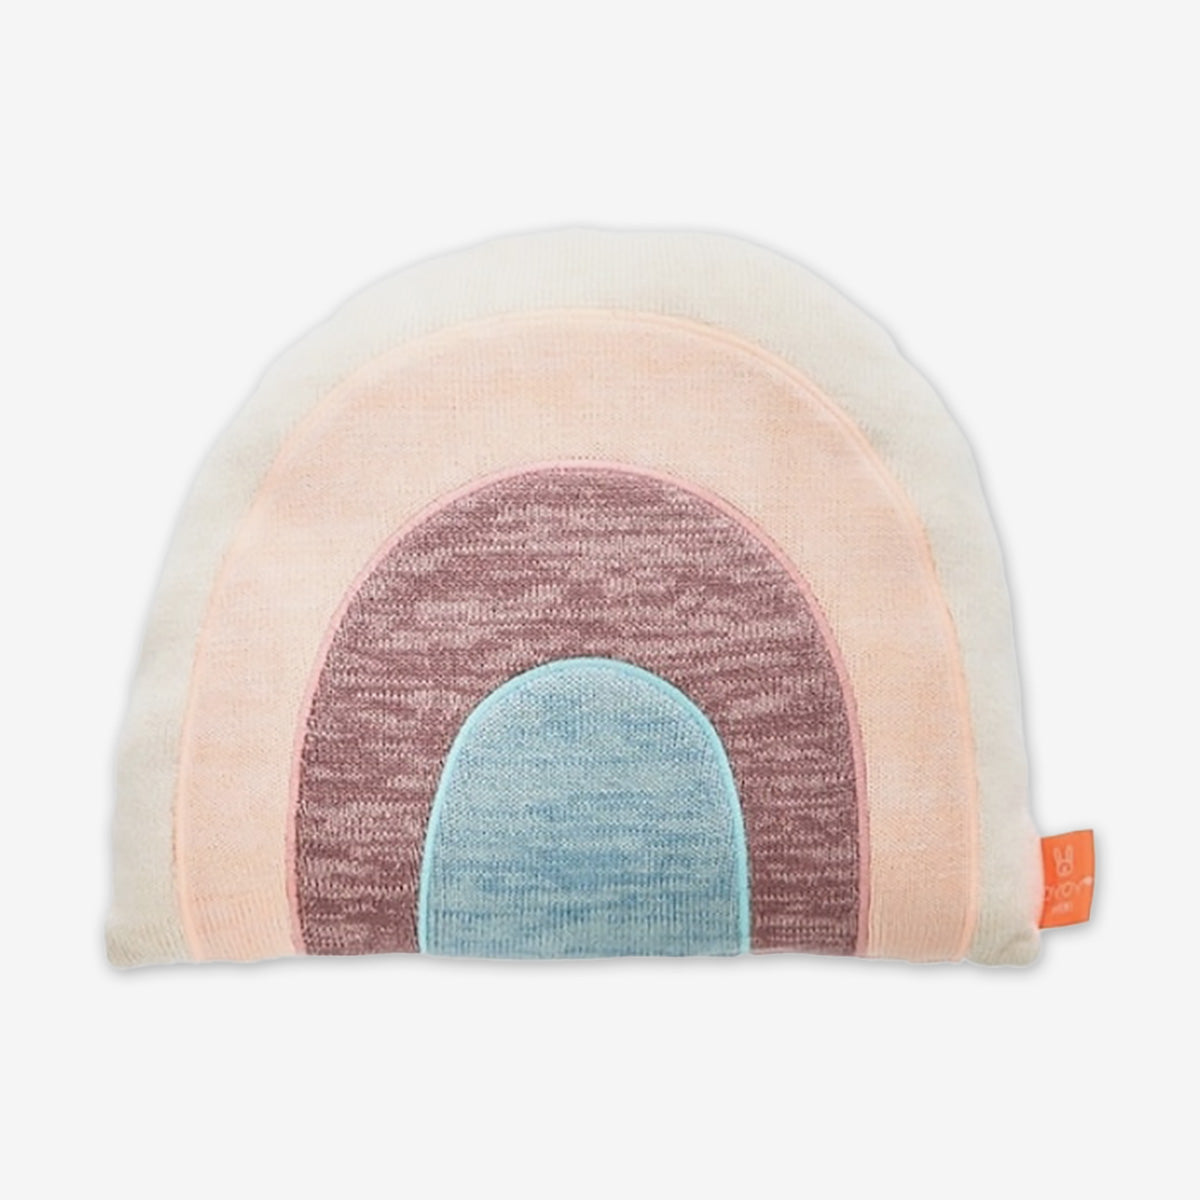 OYOY Rainbow Cushion - Large